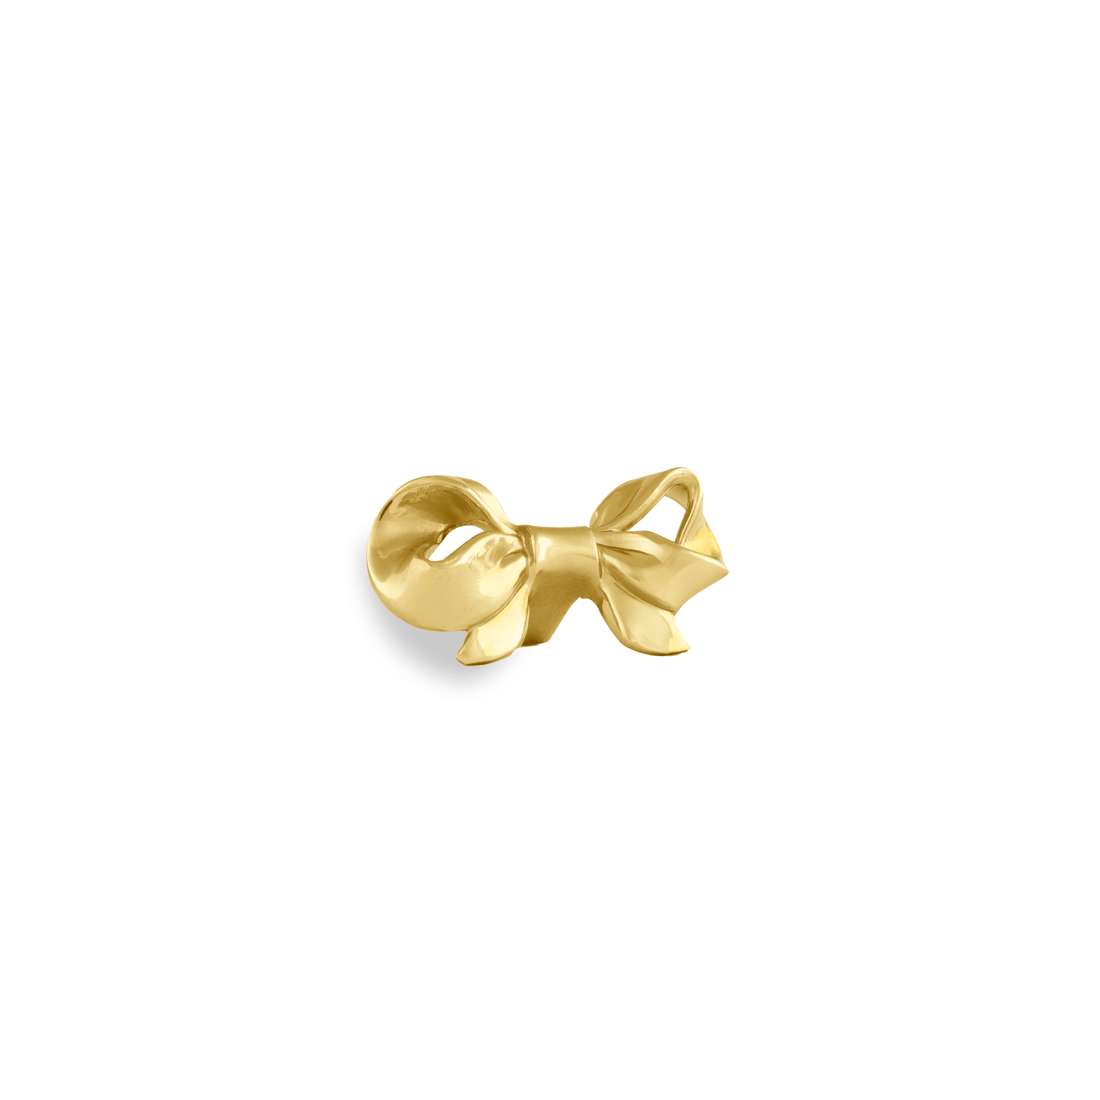 Ribbon Knob Knob 55mm / Gold / Brass - M A N T A R A